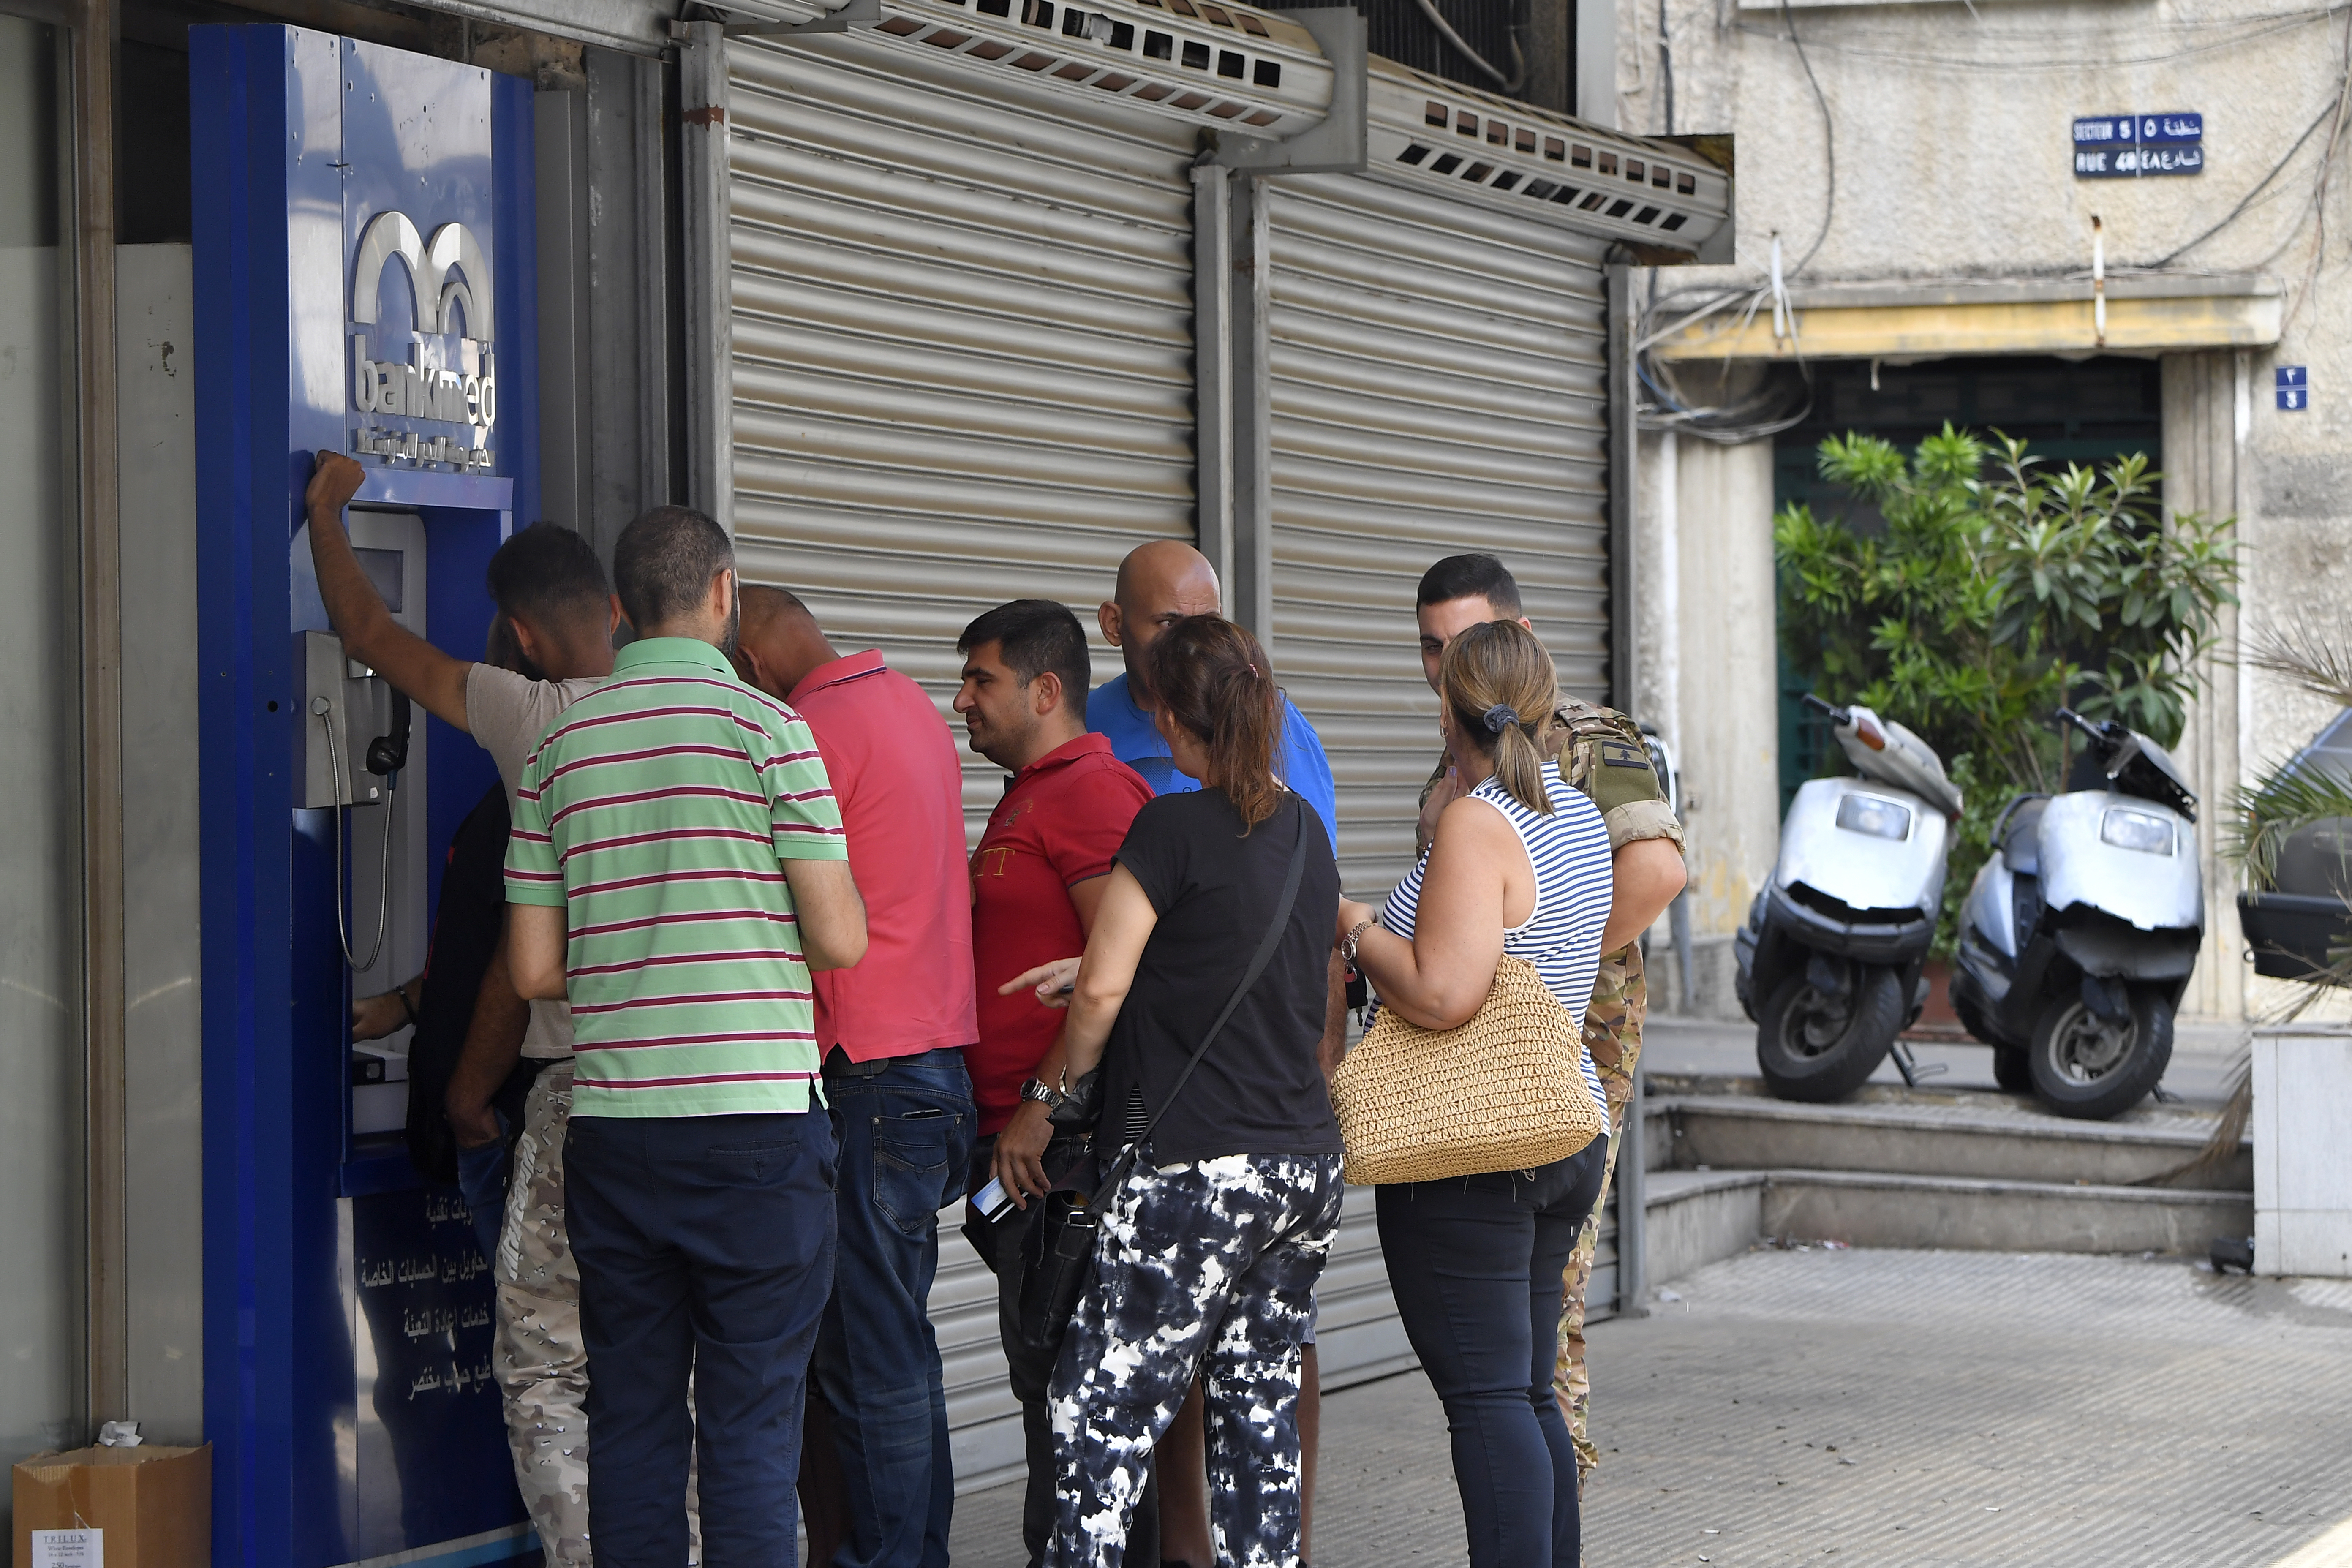  Viele Banken wurden im Libanon geschlossen, da immer mehr Menschen verzweifelt versuchten, Geld von Konten abzuheben, die aufgrund der lähmenden Finanzkrise des Landes eingefroren sind. 